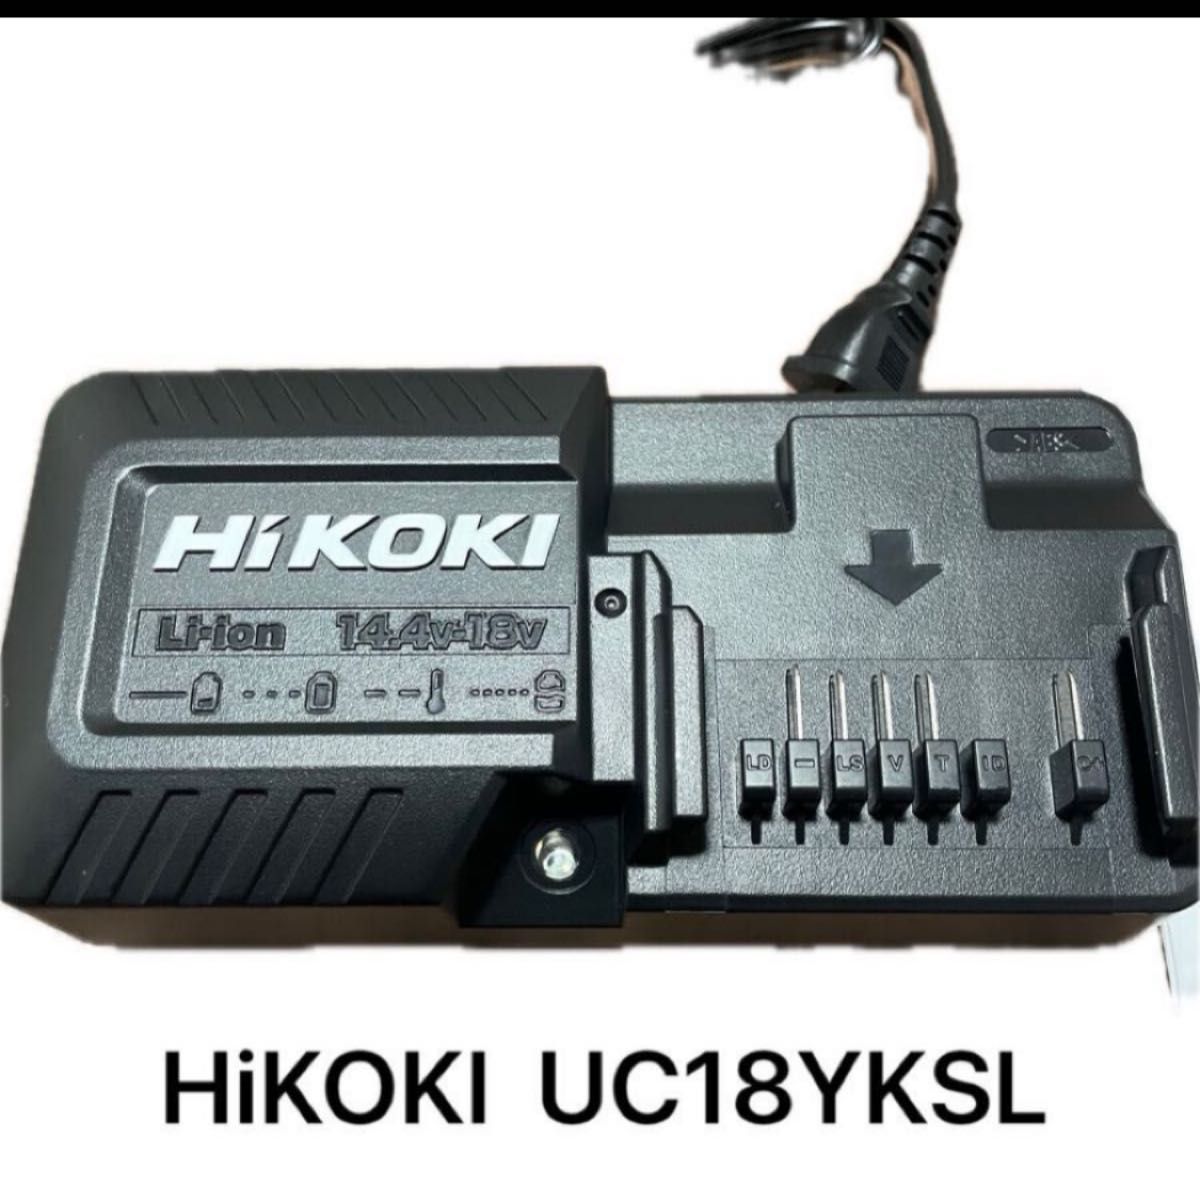 ハイコーキ 急速充電器 UC18YKSL 新品